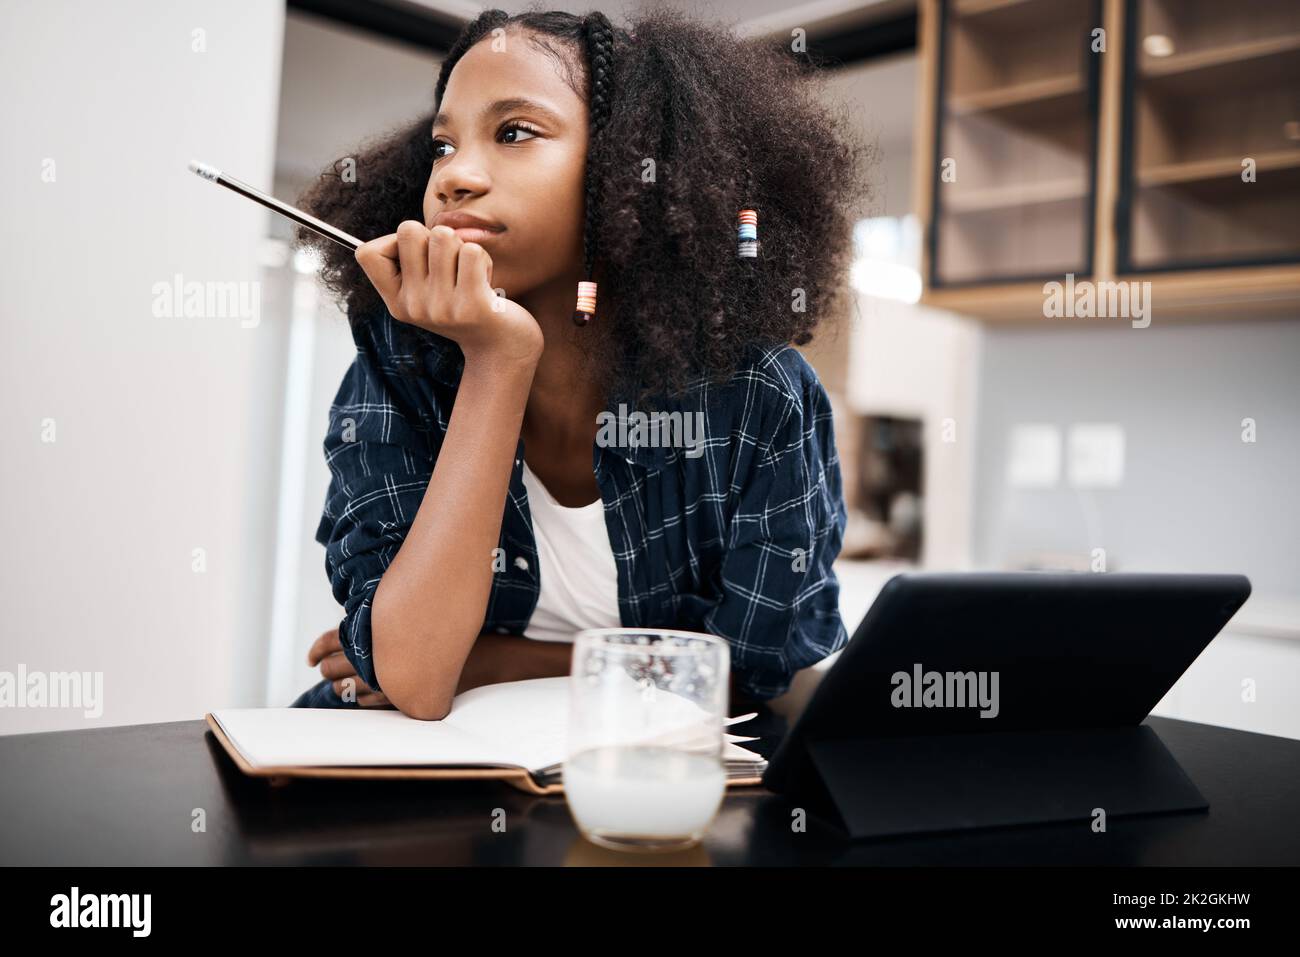 Eine Pause wäre im Moment fantastisch. Aufnahme eines jungen Mädchens, das unglücklich aussieht, während es zu Hause einen Schulauftrag macht. Stockfoto